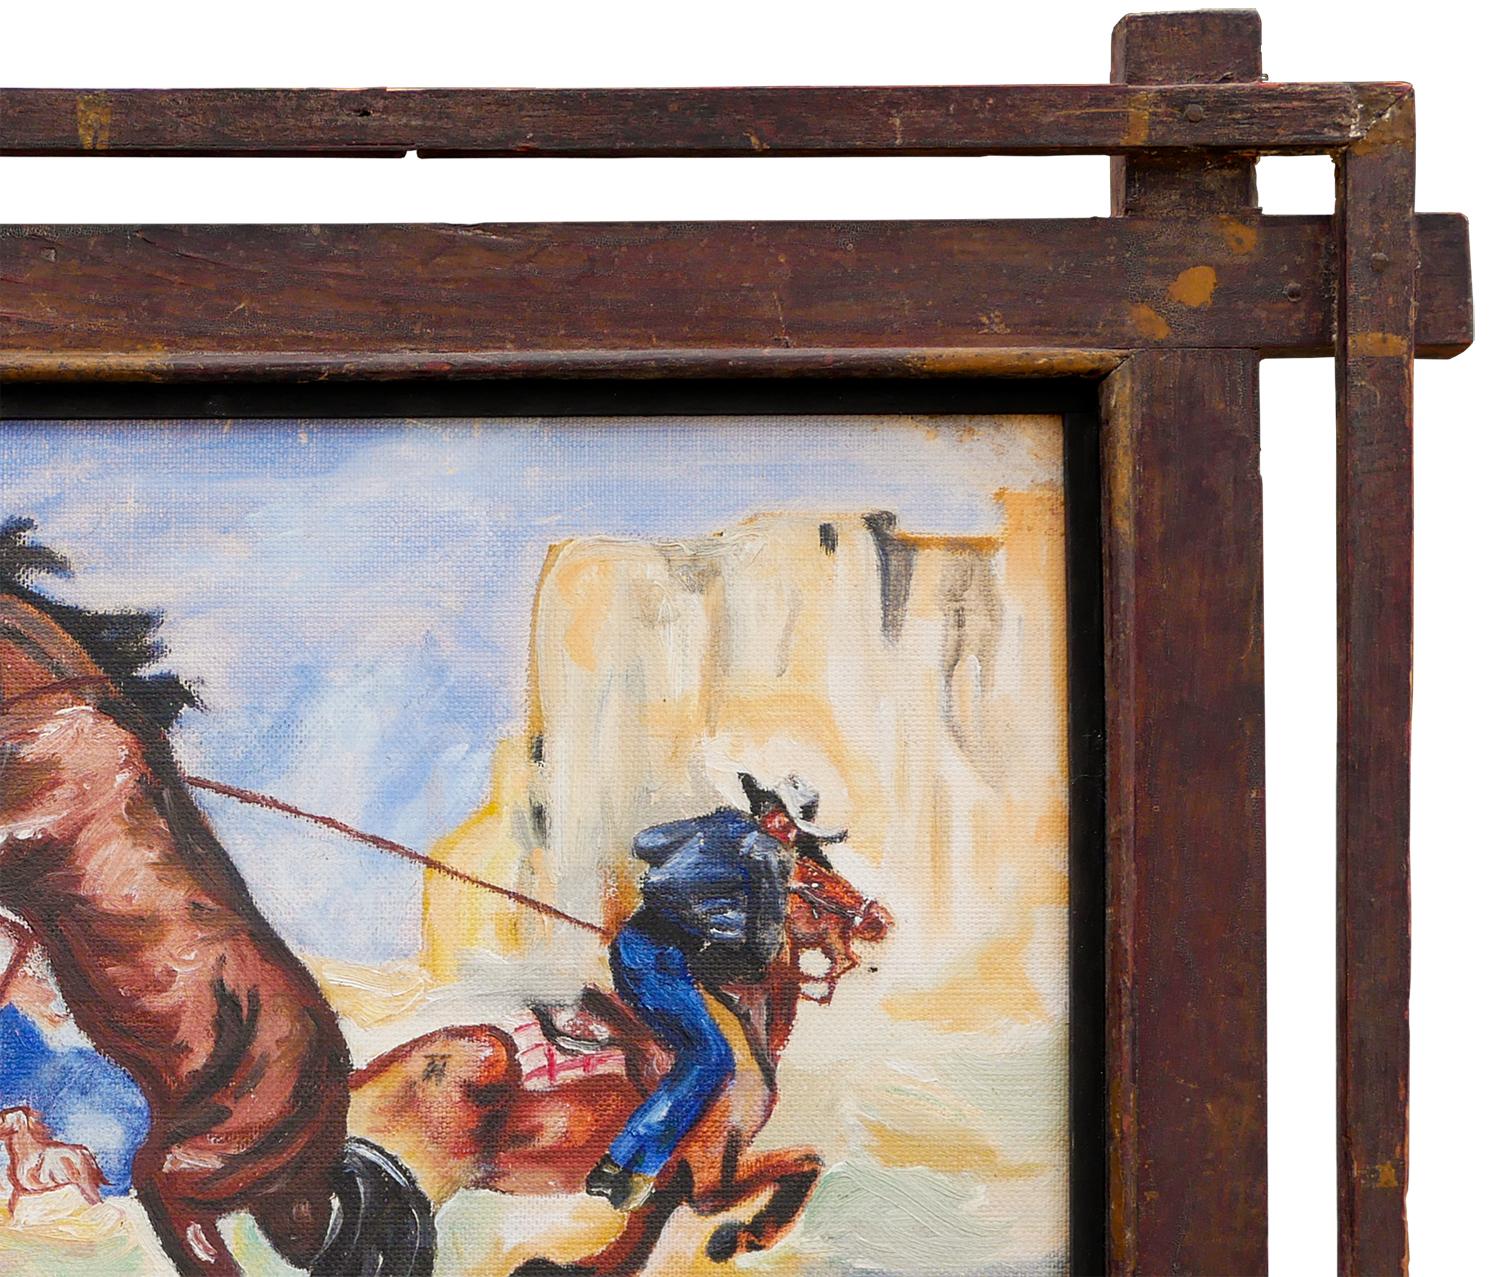 Peinture abstraite de paysage figuratif bleu, jaune, marron et rouge, réalisée par un artiste marginal. Le tableau représente une poursuite à cheval avec deux cow-boys au milieu d'un désert de l'Ouest. Non signée. Encadré dans un double cadre en